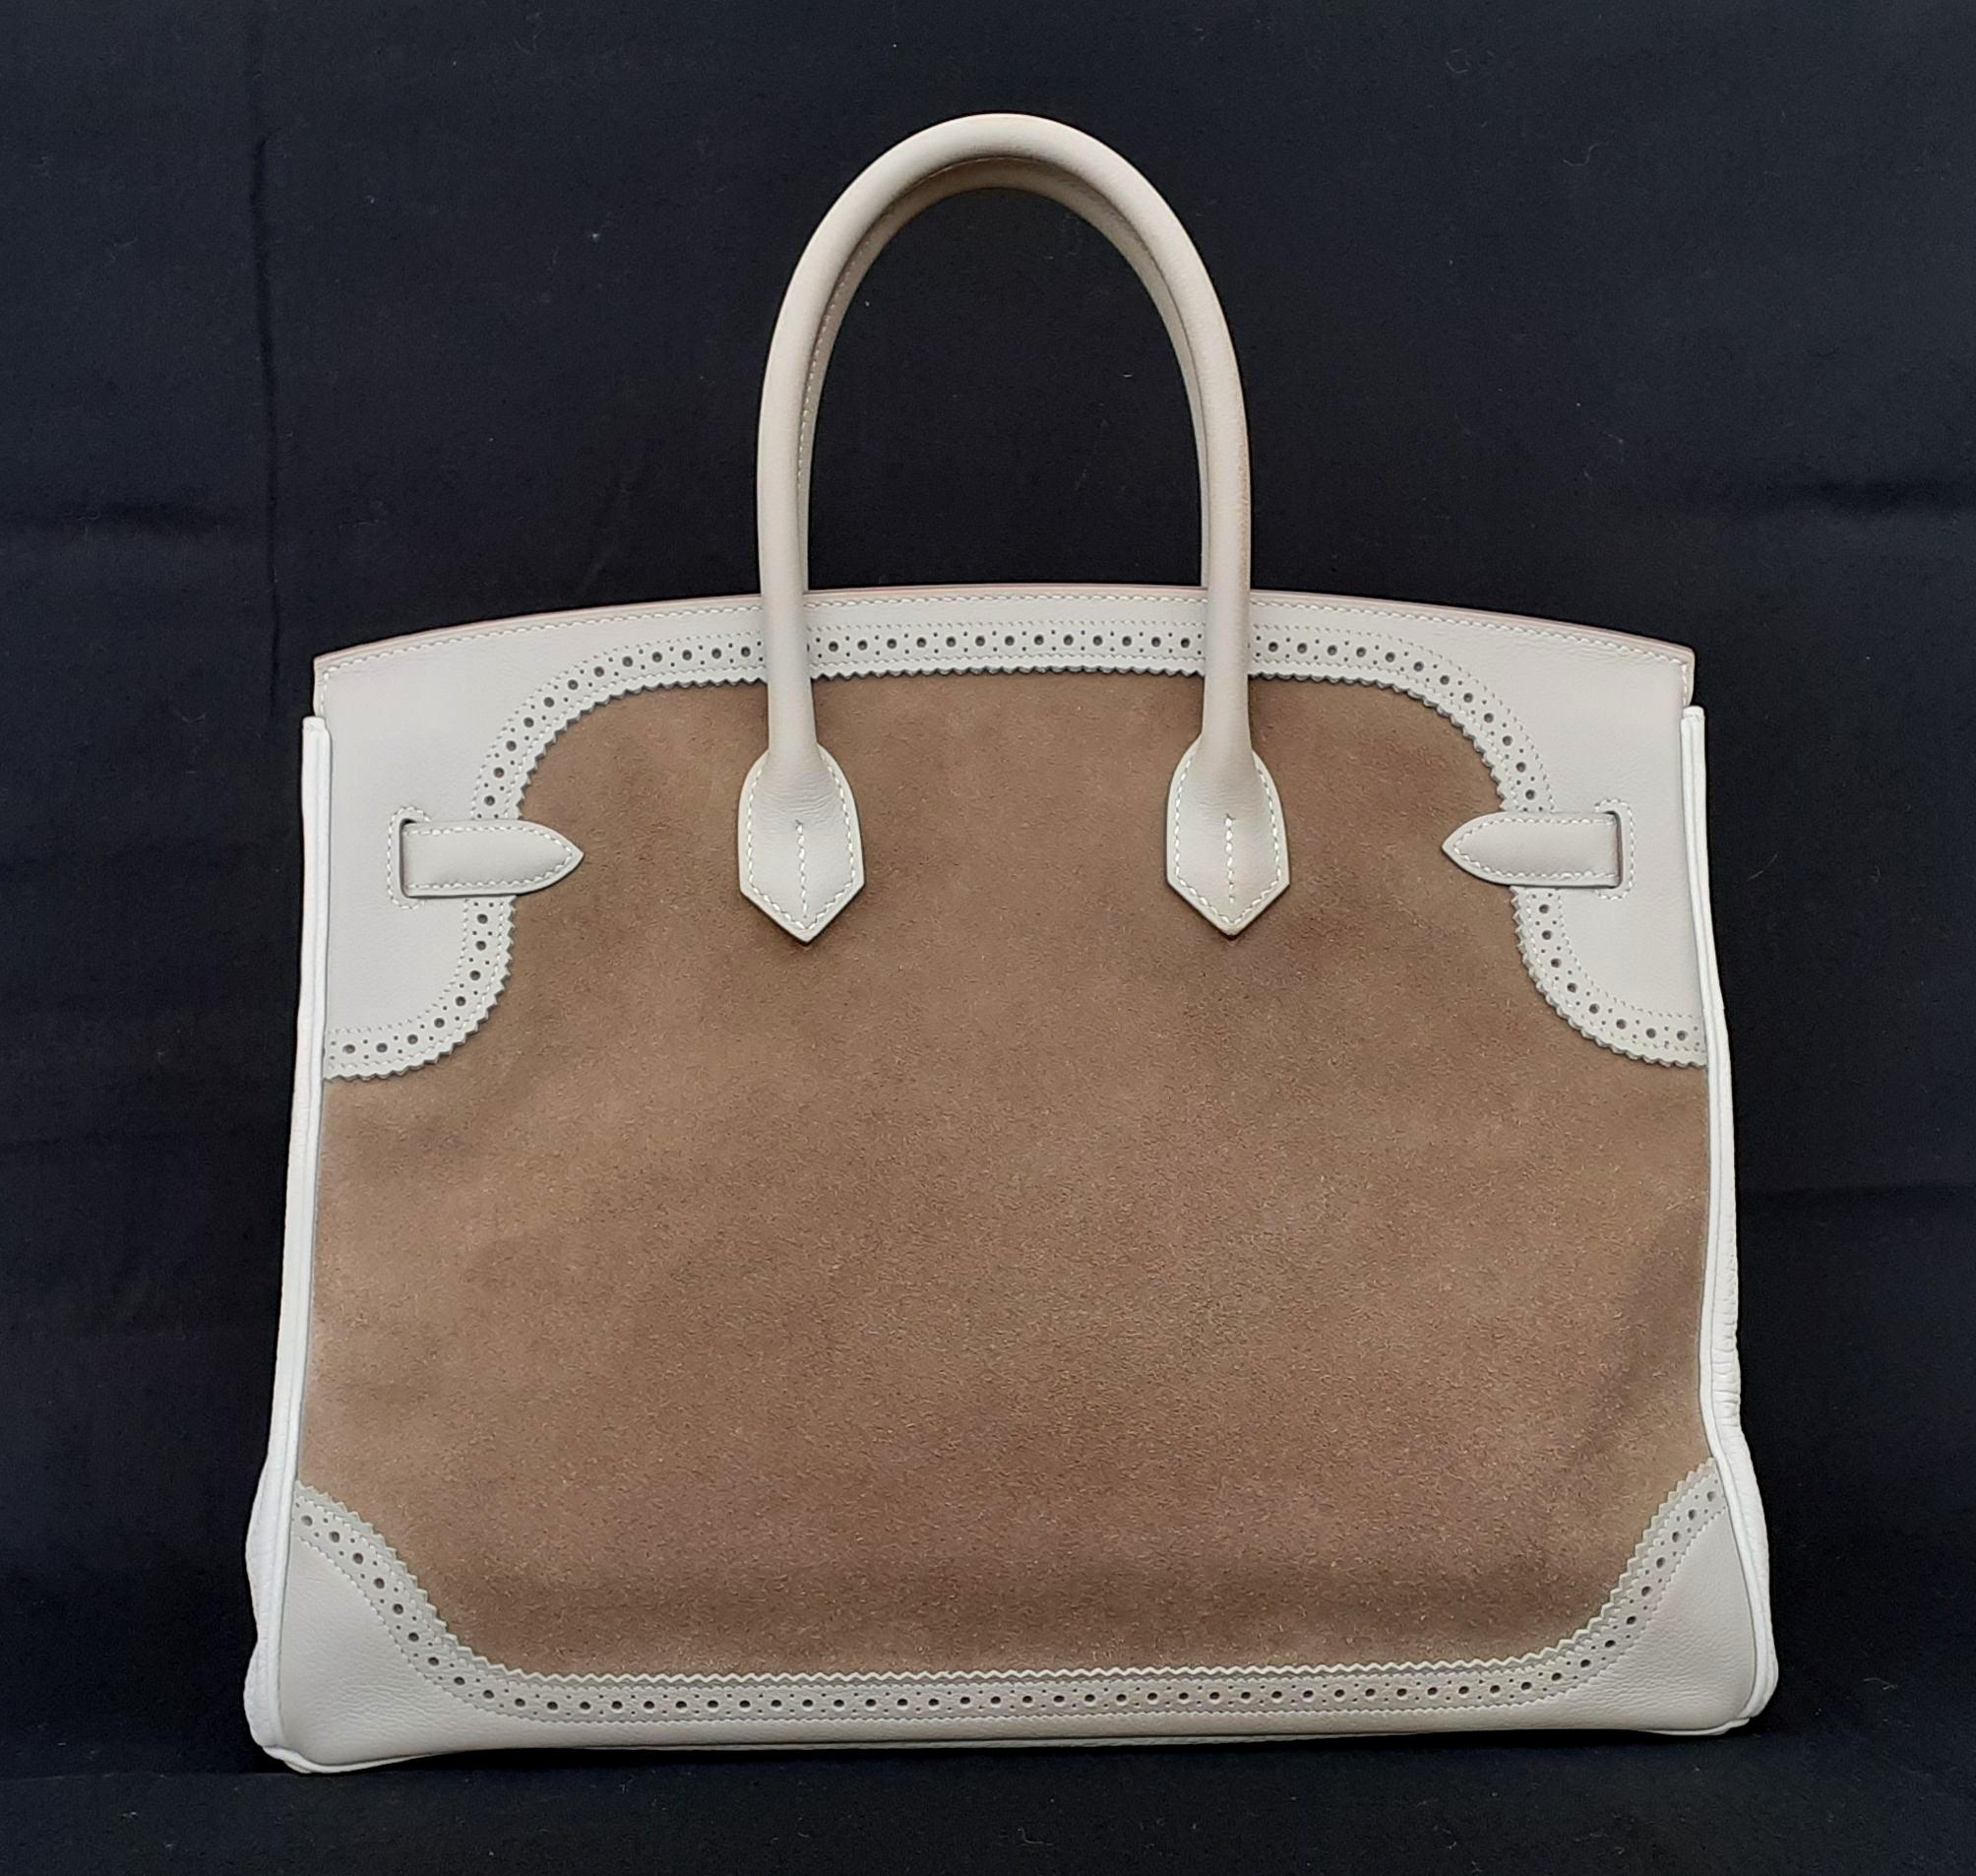 Exceptionnel et magnifique sac à main Hermès authentique

